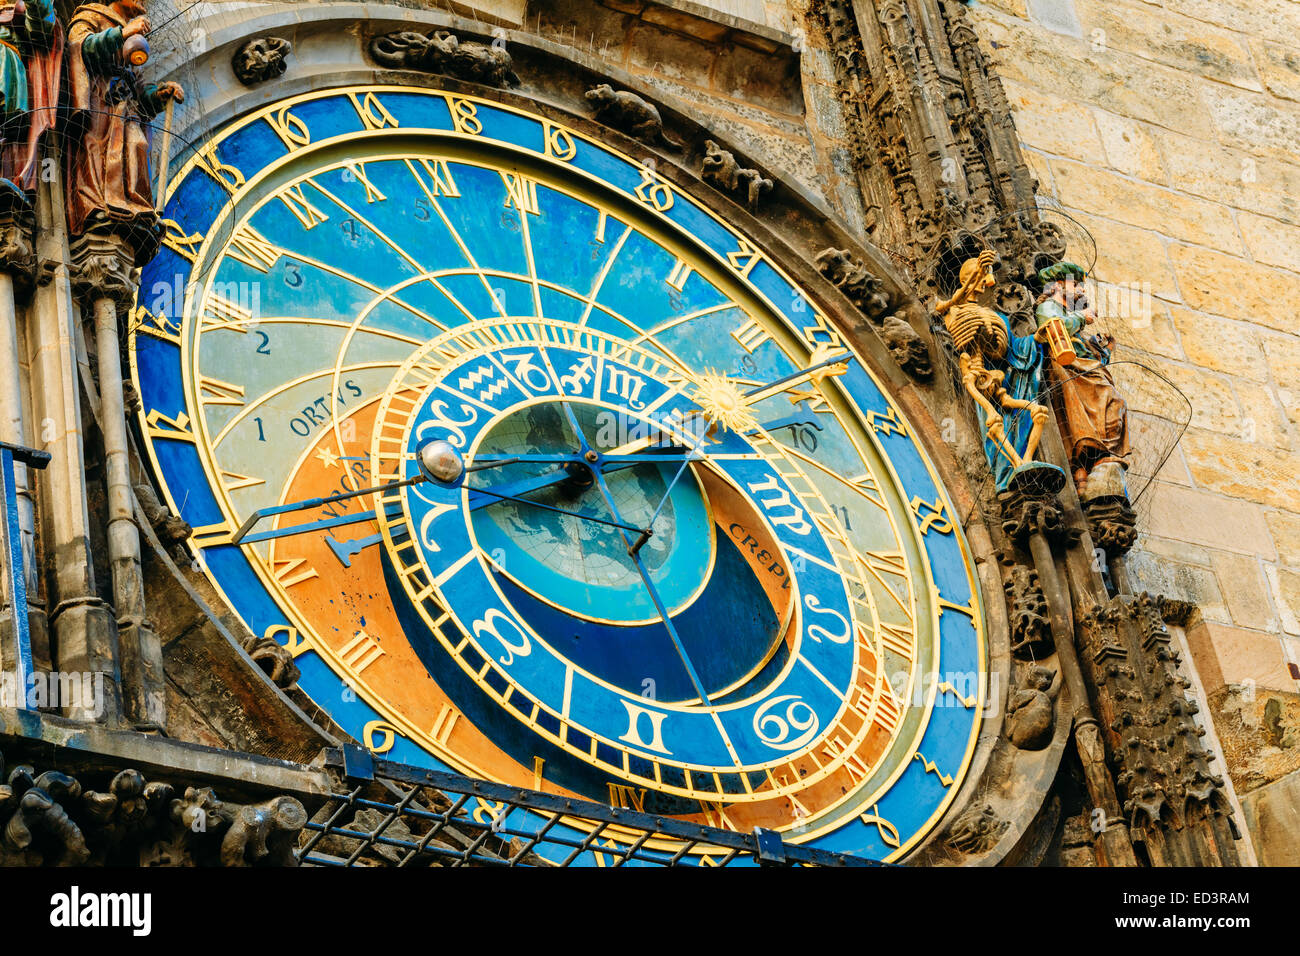 Prager astronomische Uhr am Altstädter Rathaus von 1410 ist die dritte älteste astronomische Uhr In Welt und älteste noch W Stockfoto